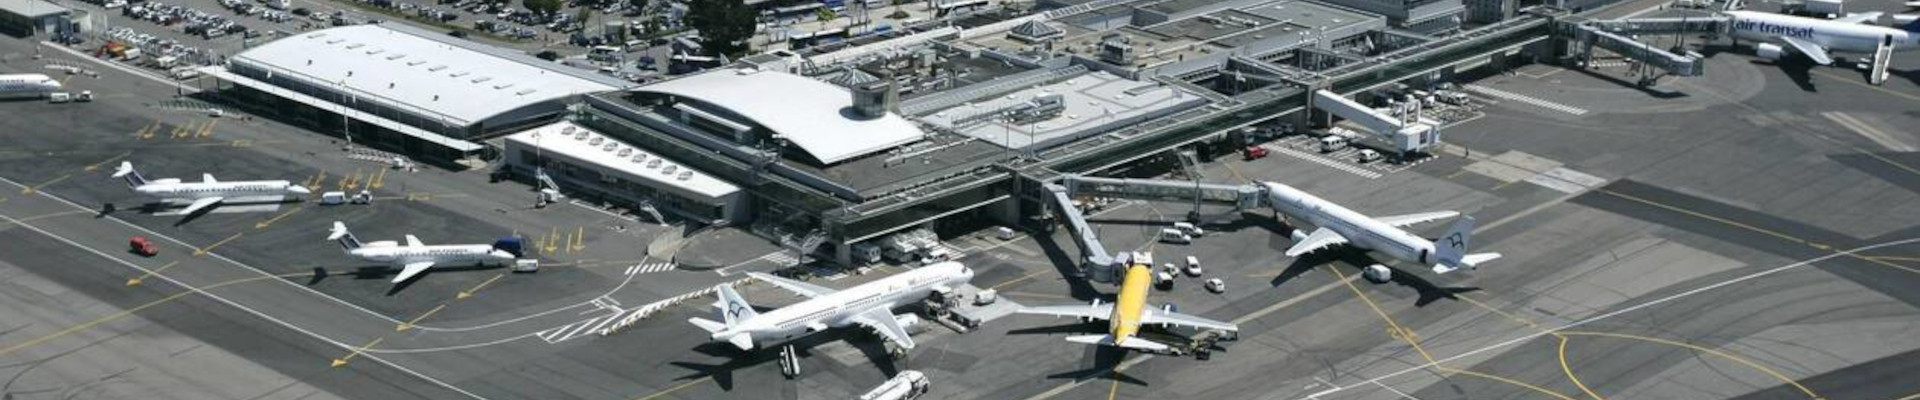 Nantes, Lille, Montpellier… Des aéroports à nouveau évacués après des alertes à la bombe